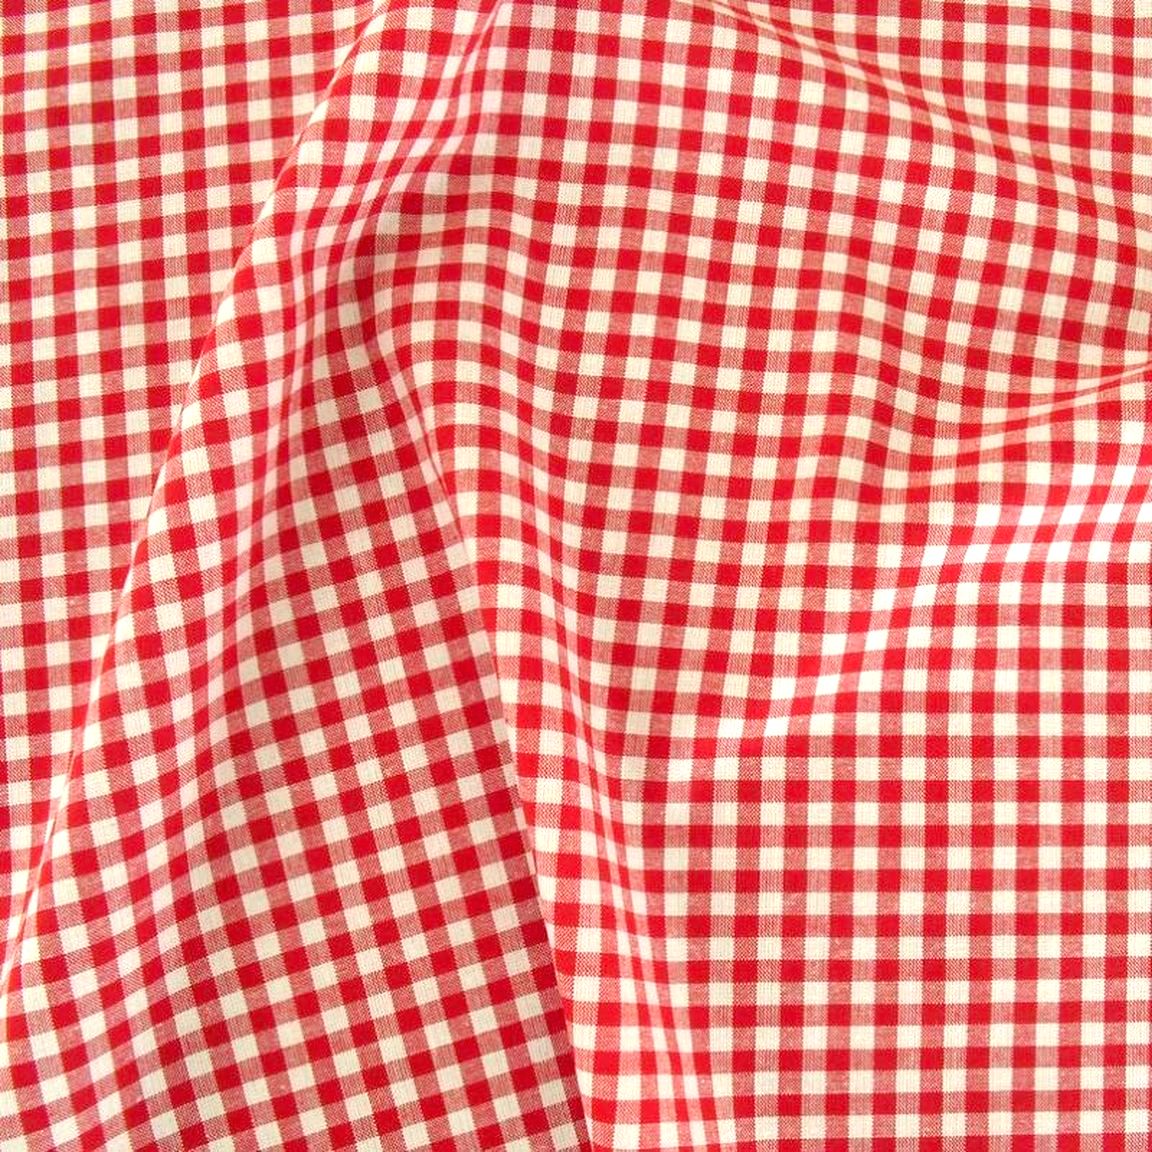 Weiche Karo Baumwollstoff Meterware für Kleid Gardine Vorhang - rot weiß